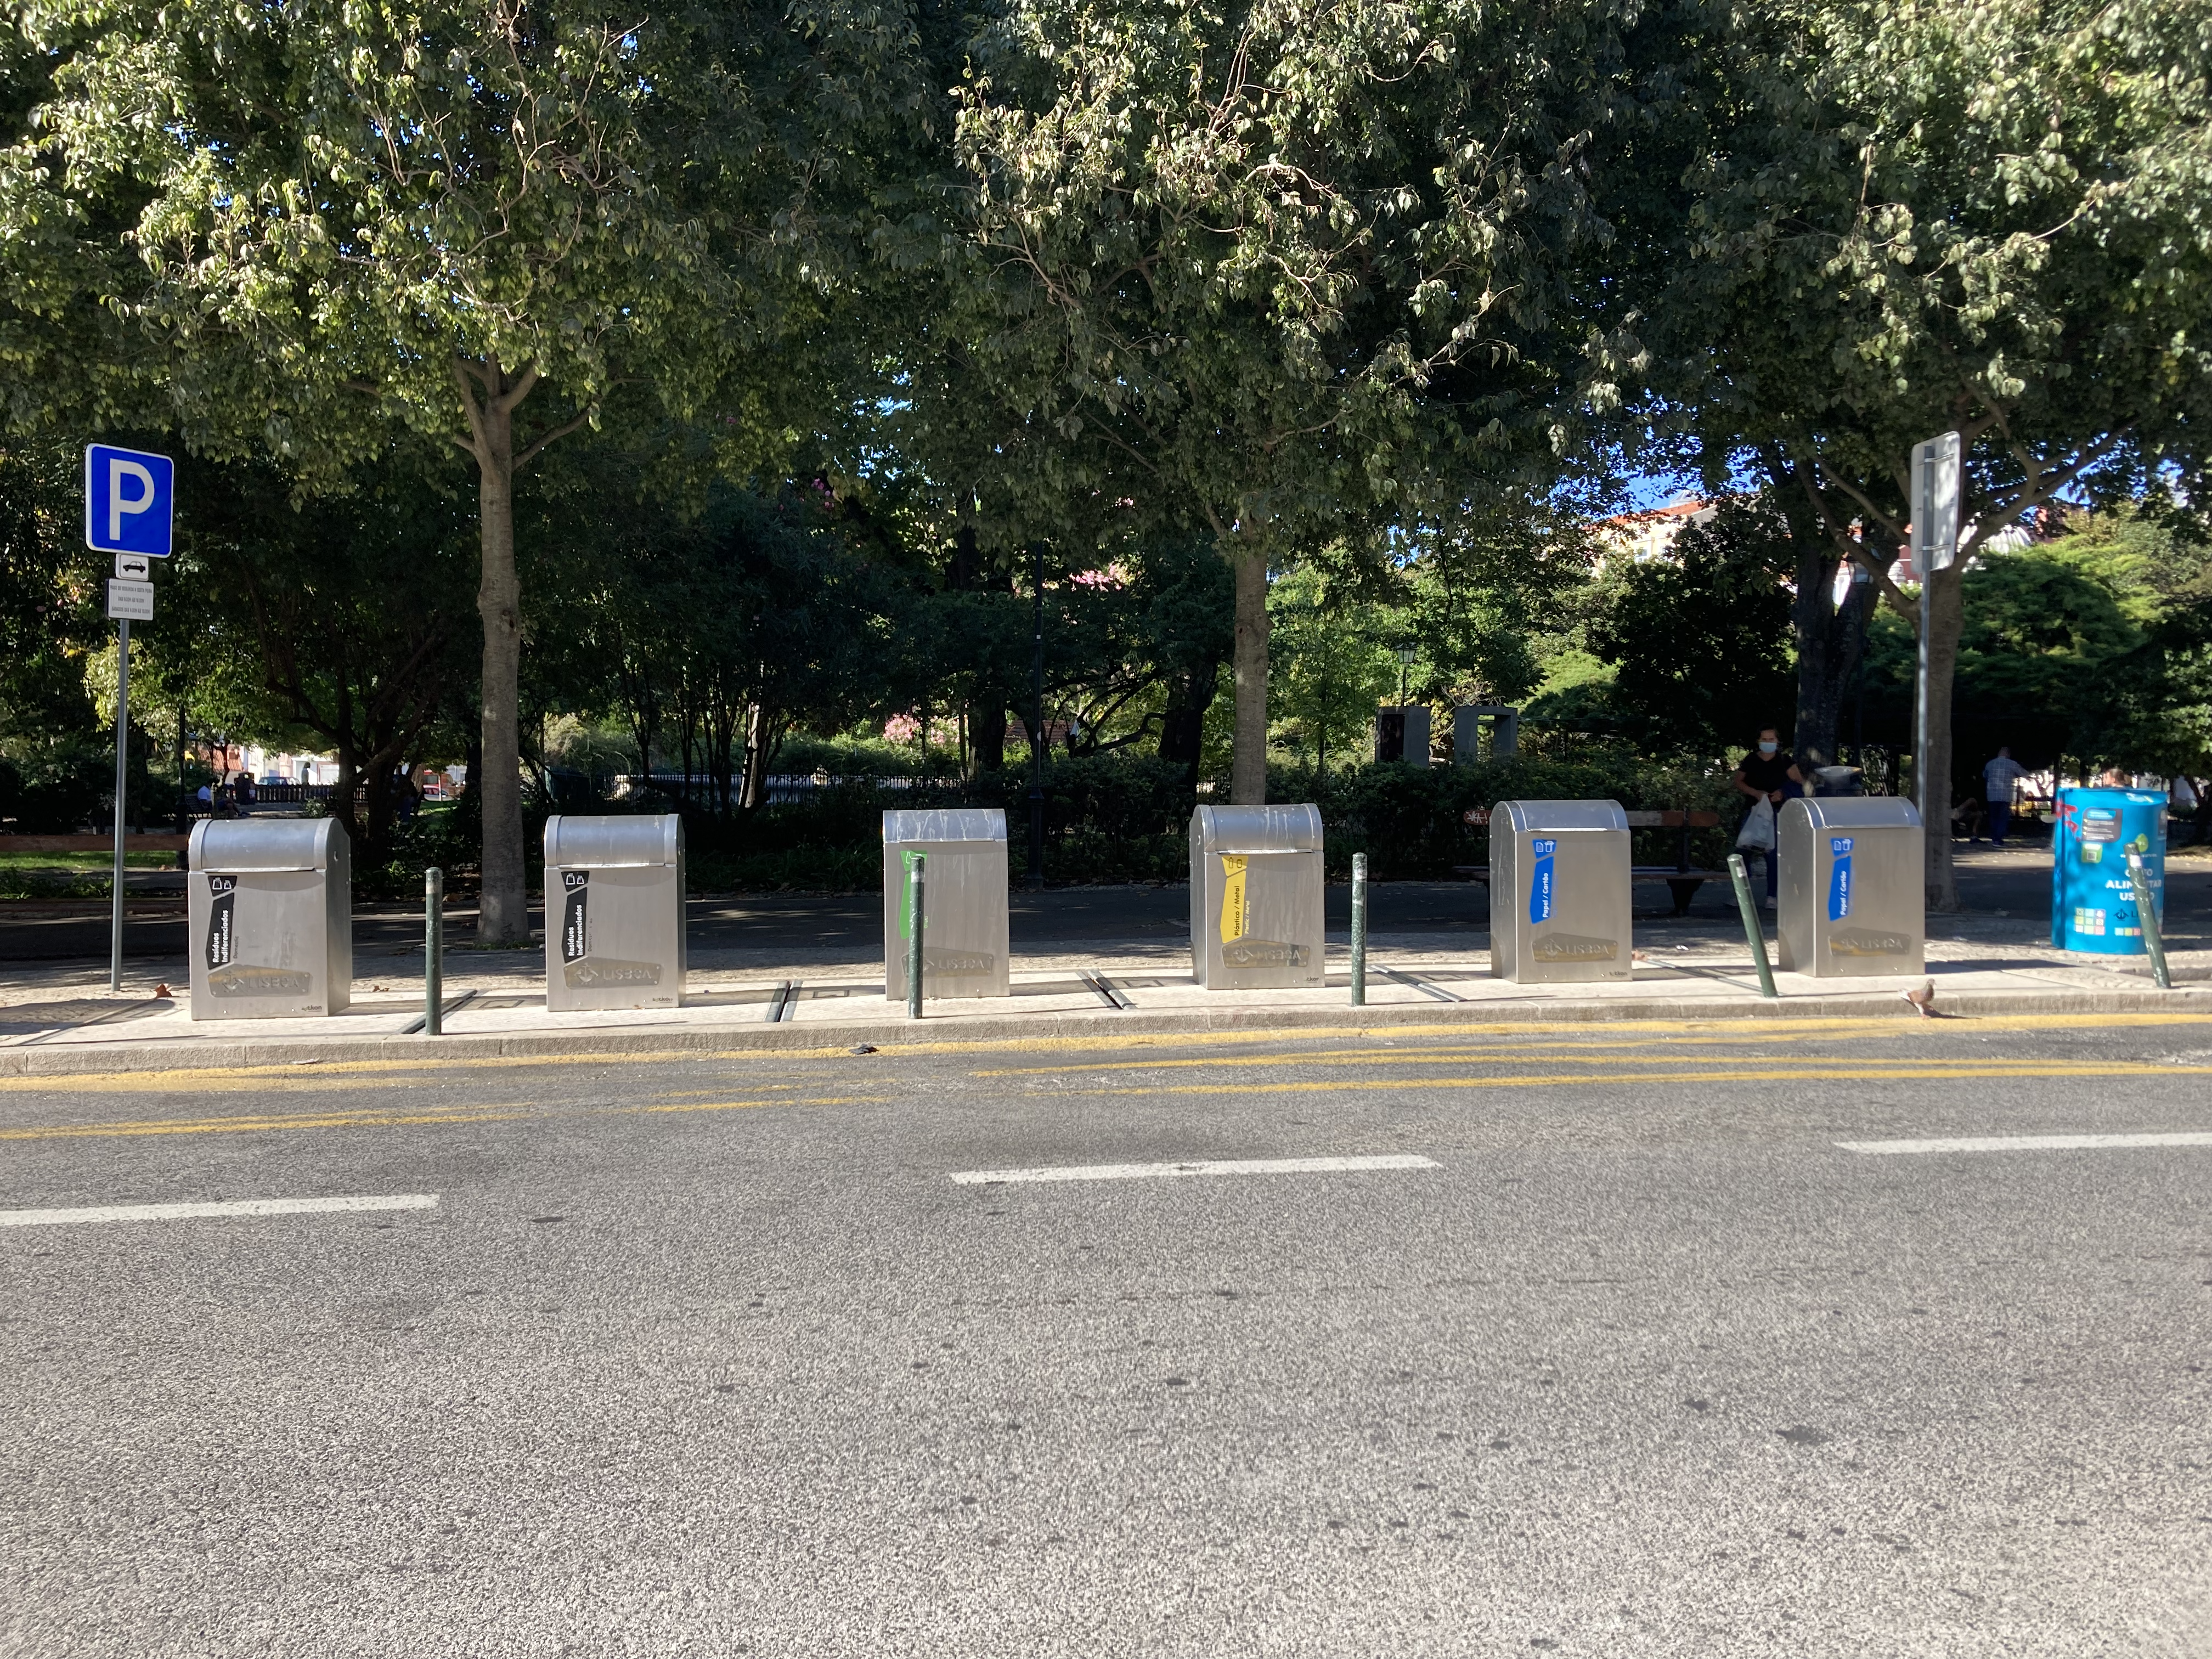 ecopoint trash bins in Portugal